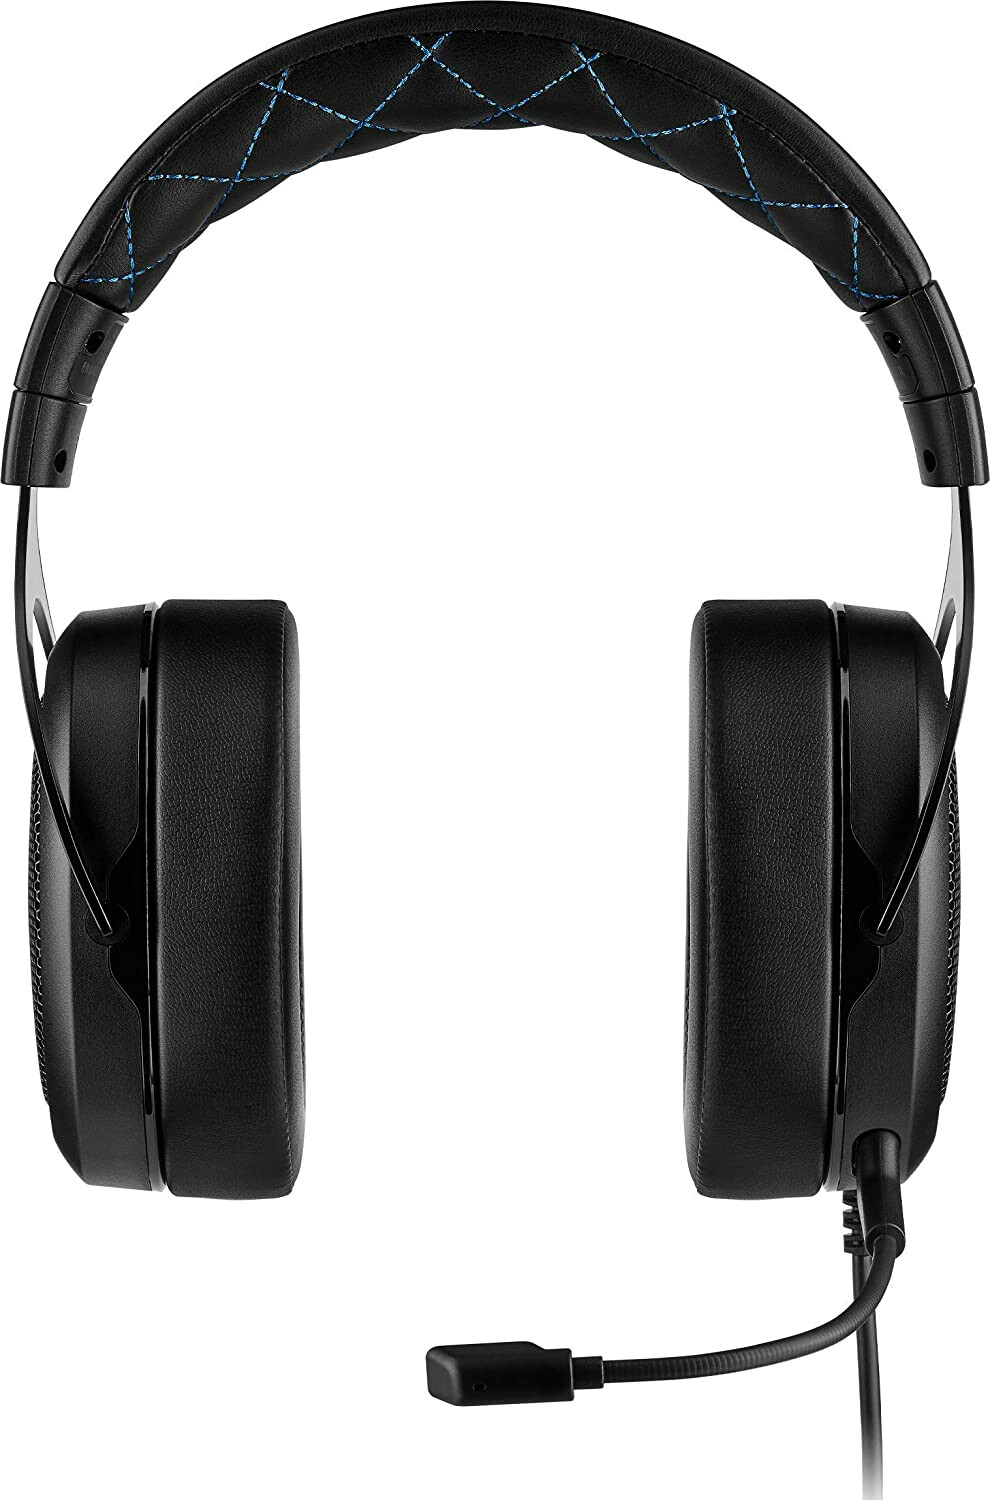 Corsair HS50 Pro Stereo Over-ear Headset